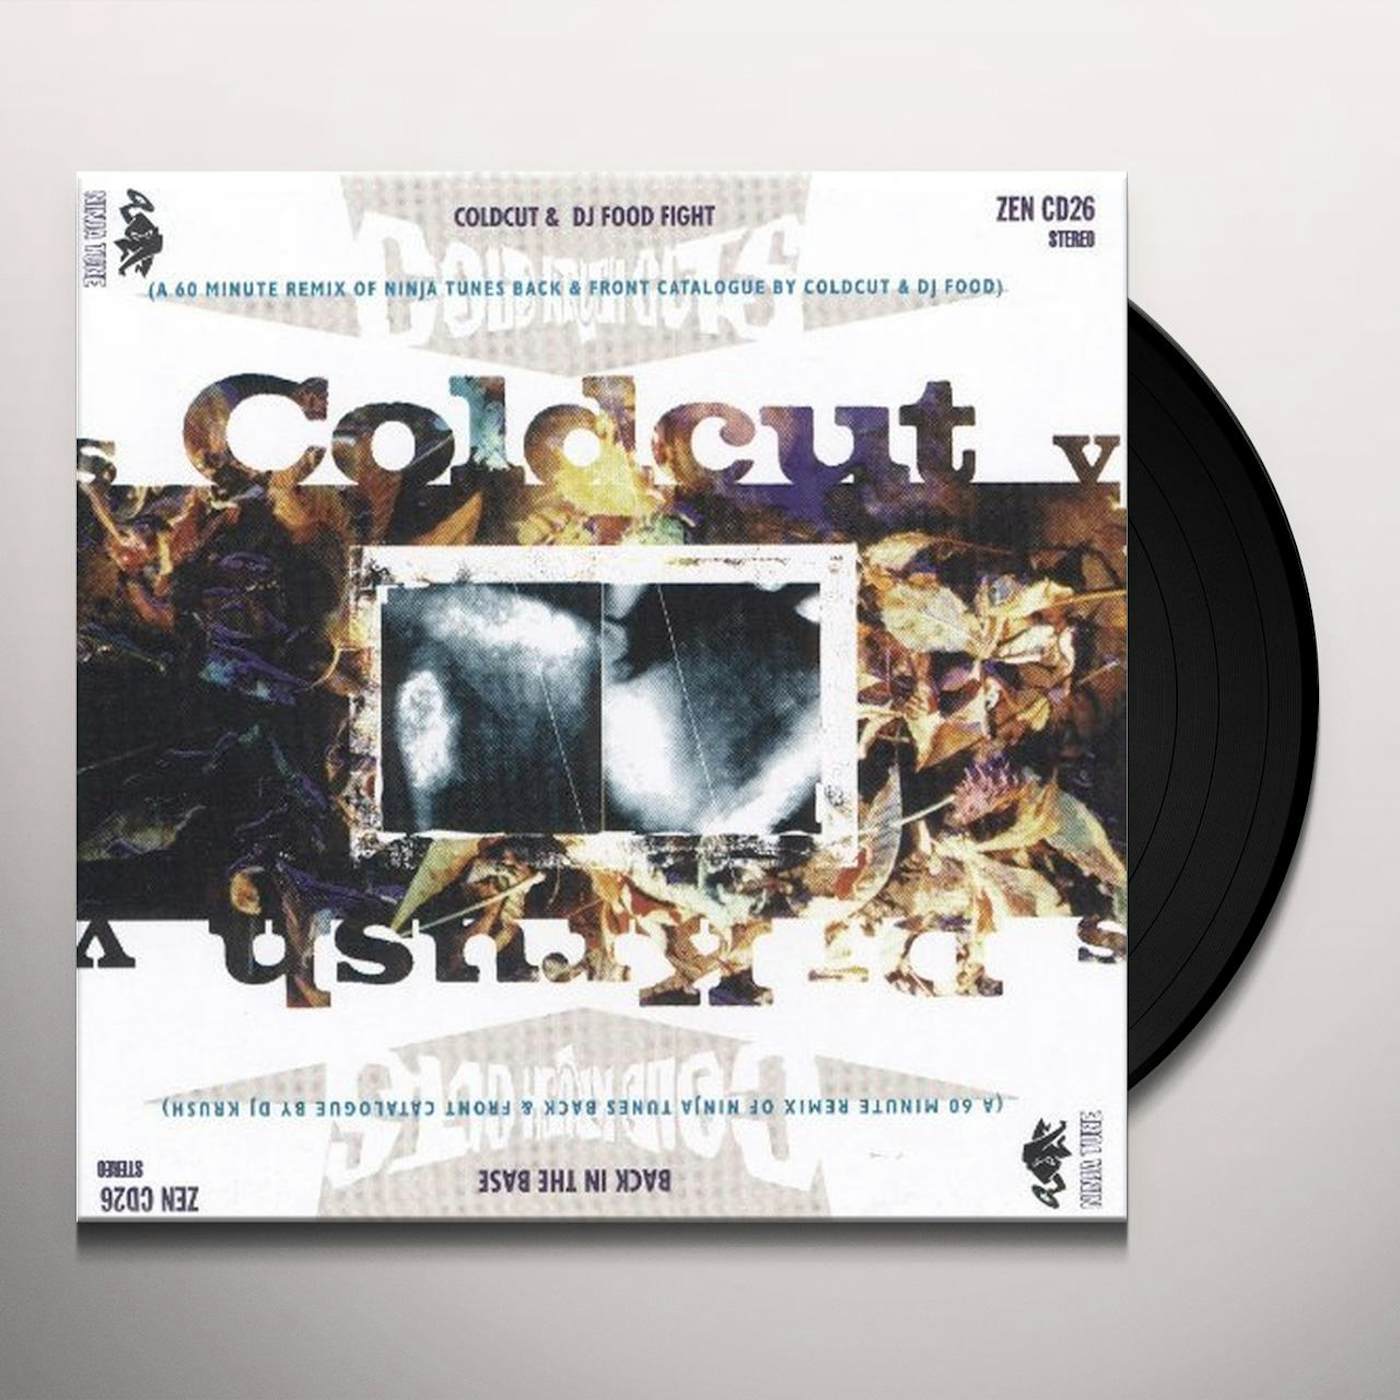 COLD KRUSH CUTS / VARIOUS   COLD KRUSH CUTS / VARIOUS Vinyl Record